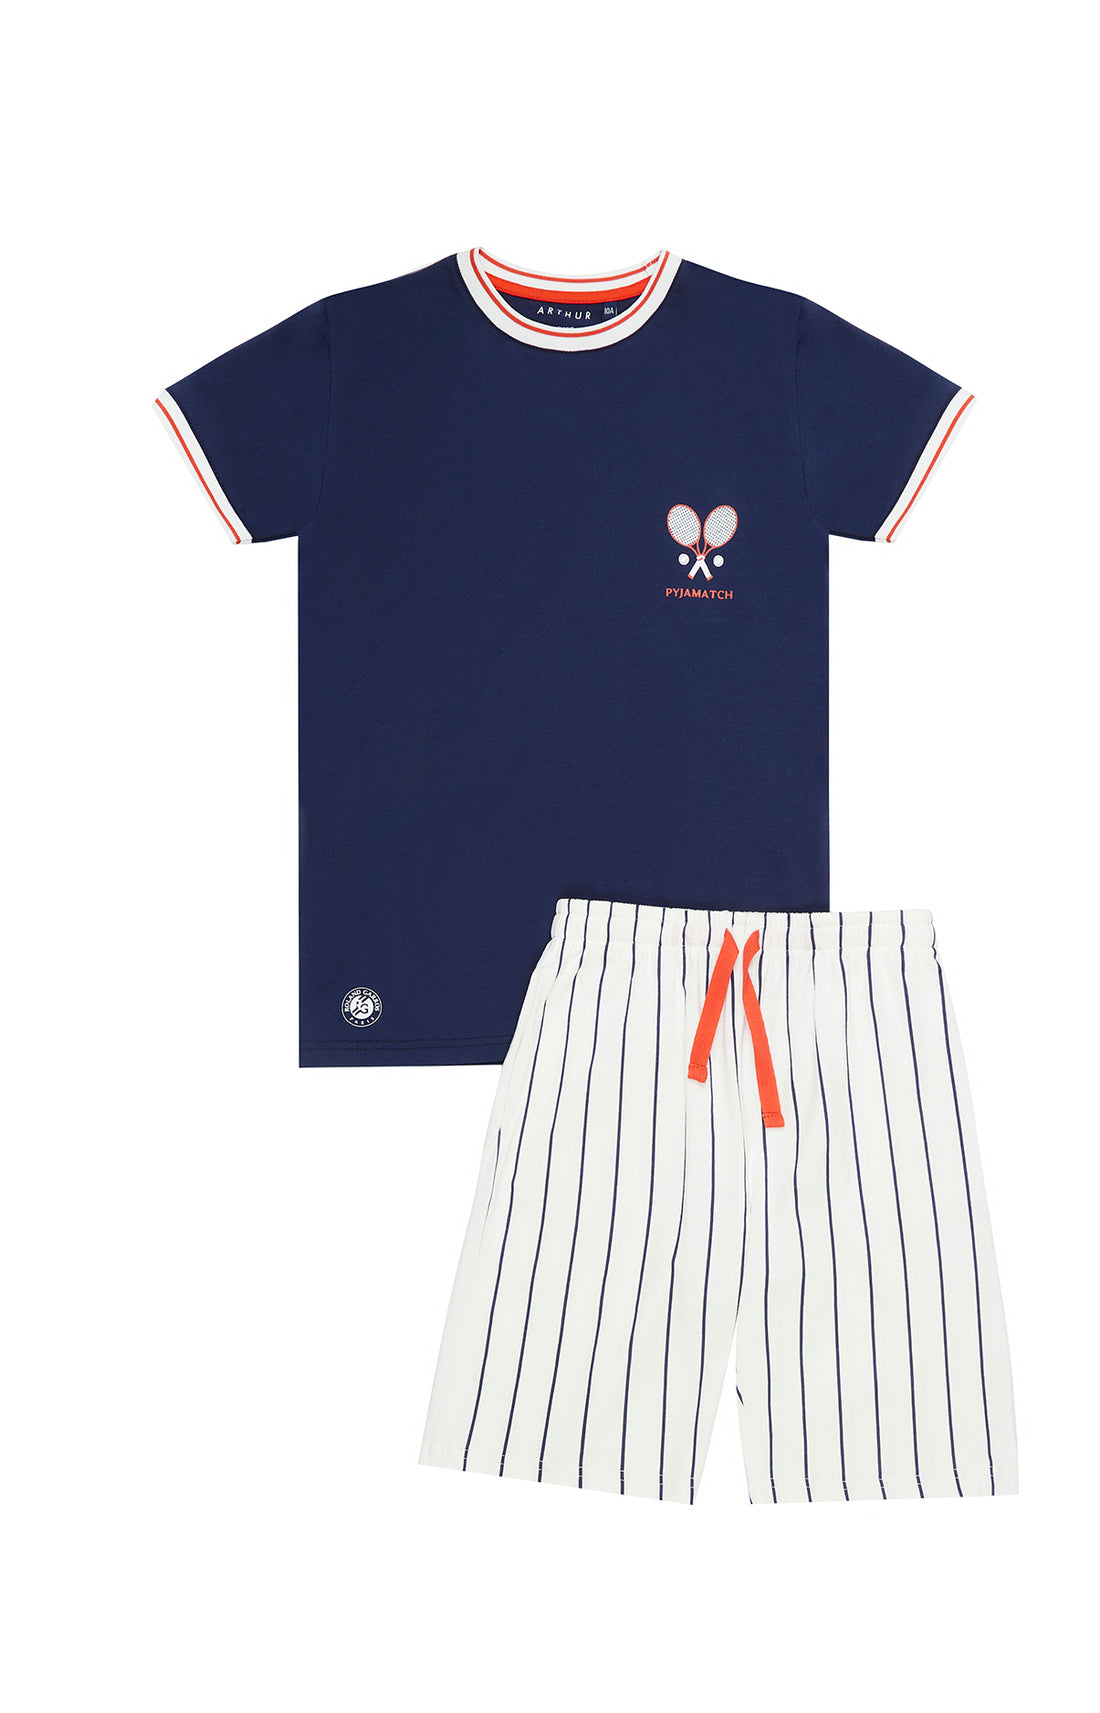 Pajamatch - Roland Garros